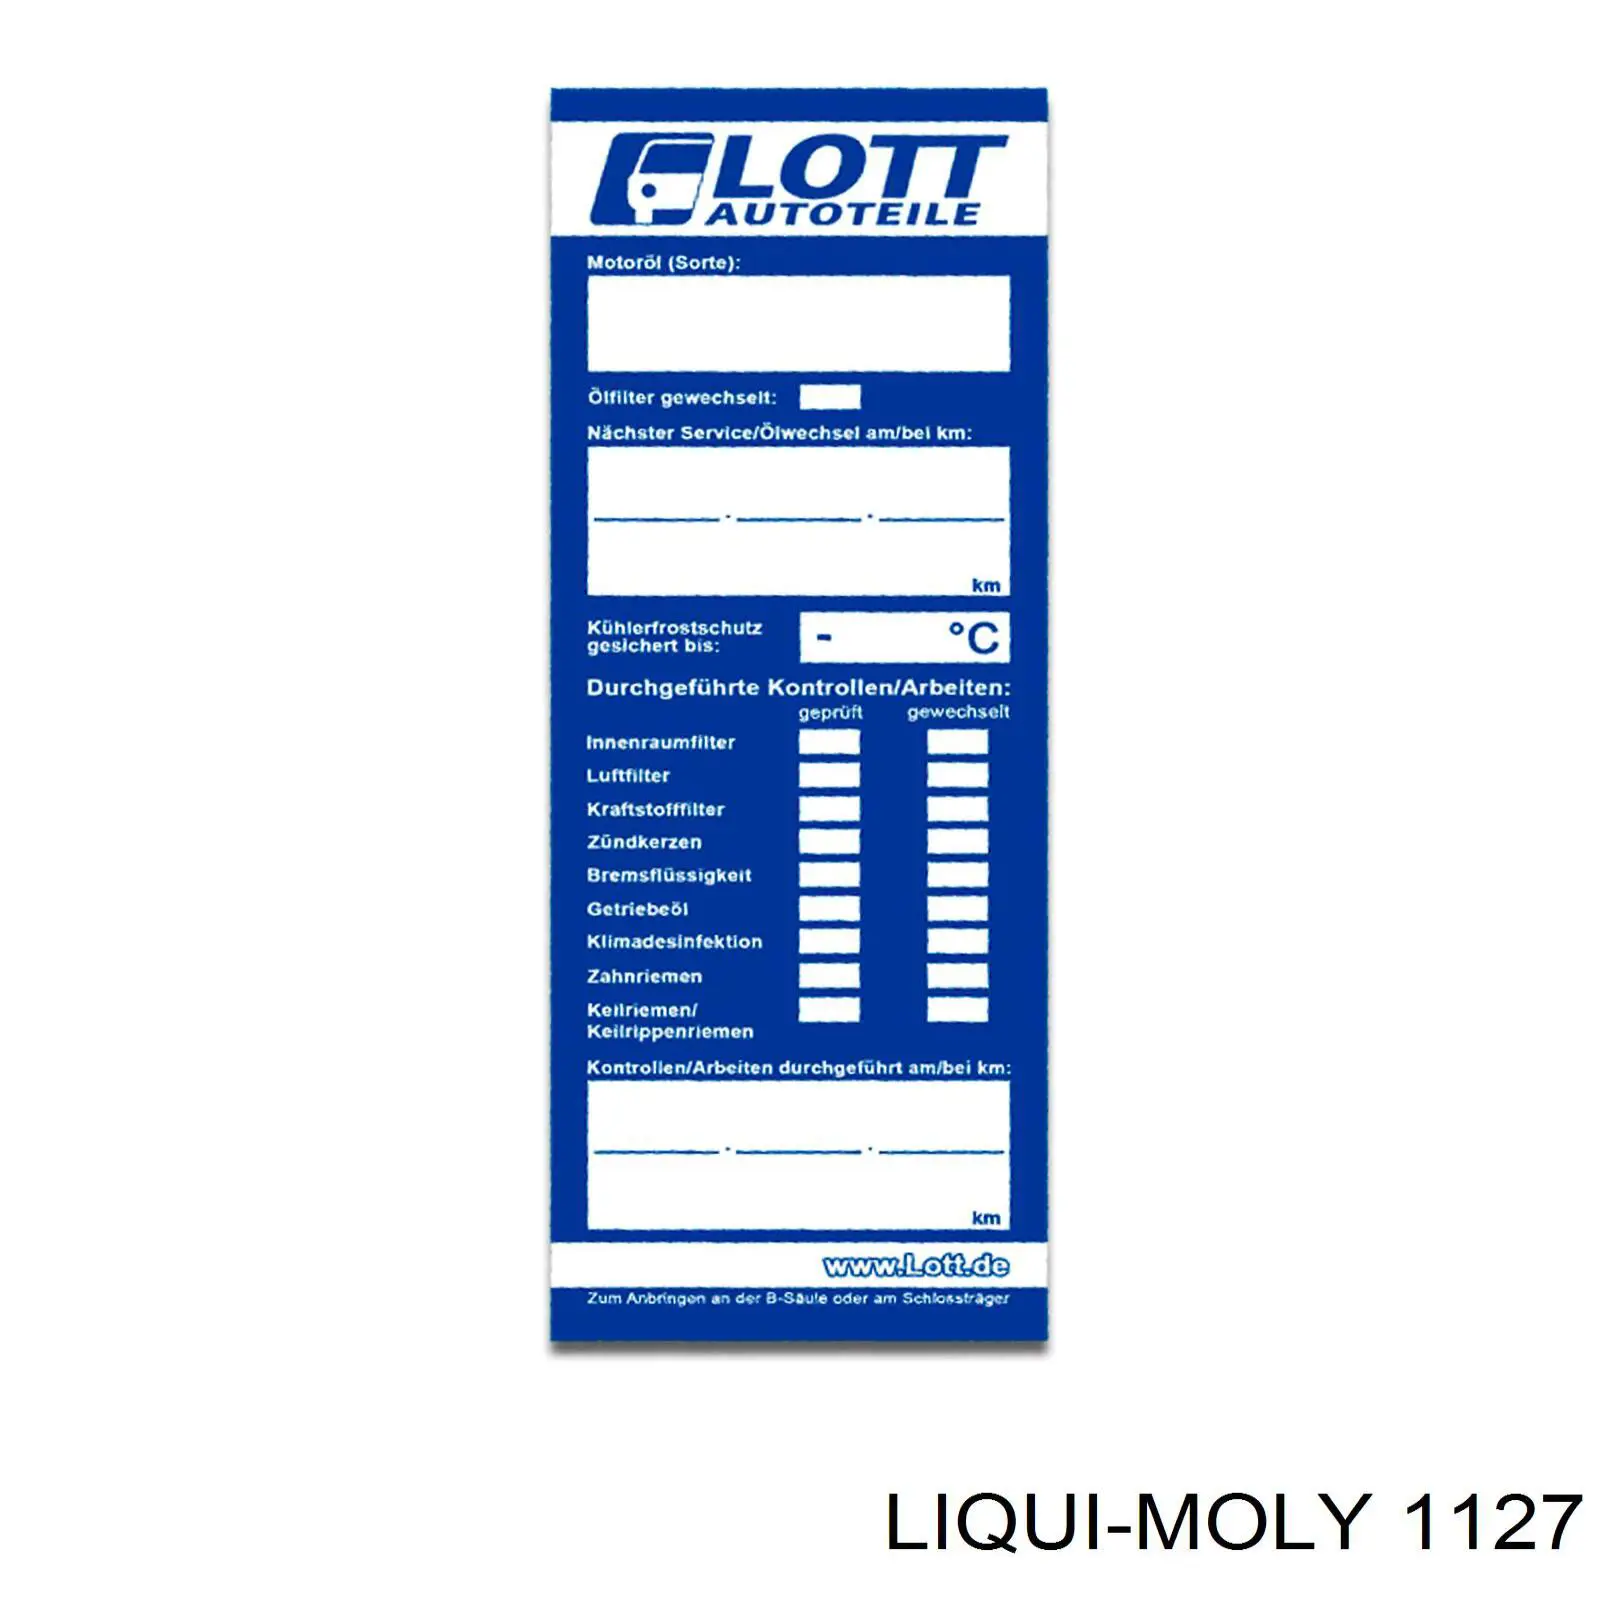 1127 Liqui Moly líquido de dirección hidráulica